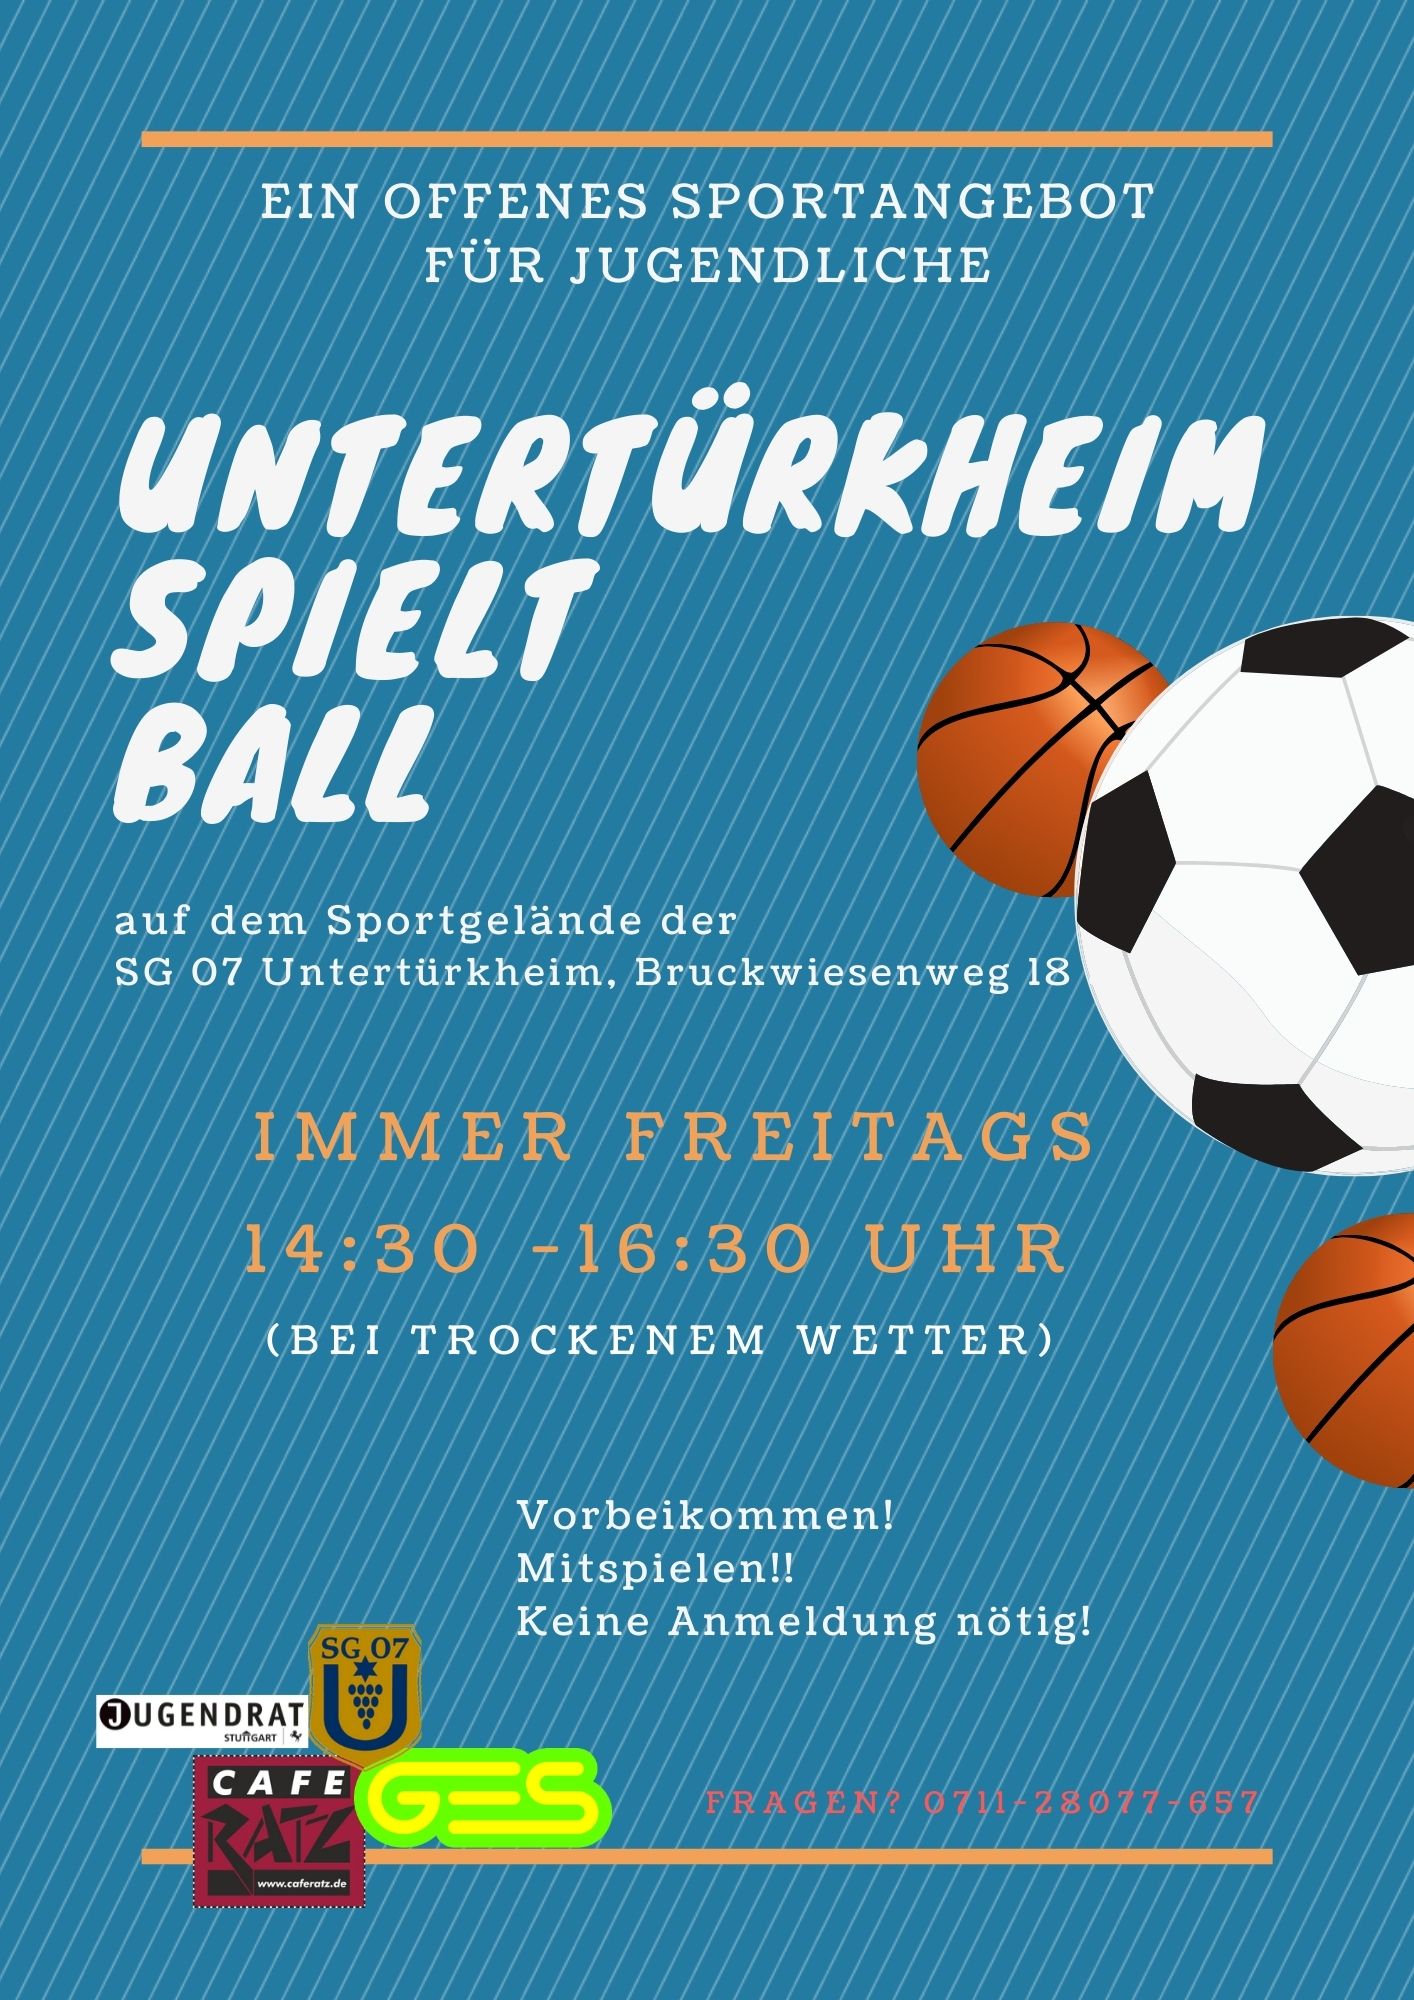 Untertürkheim spielt Ball